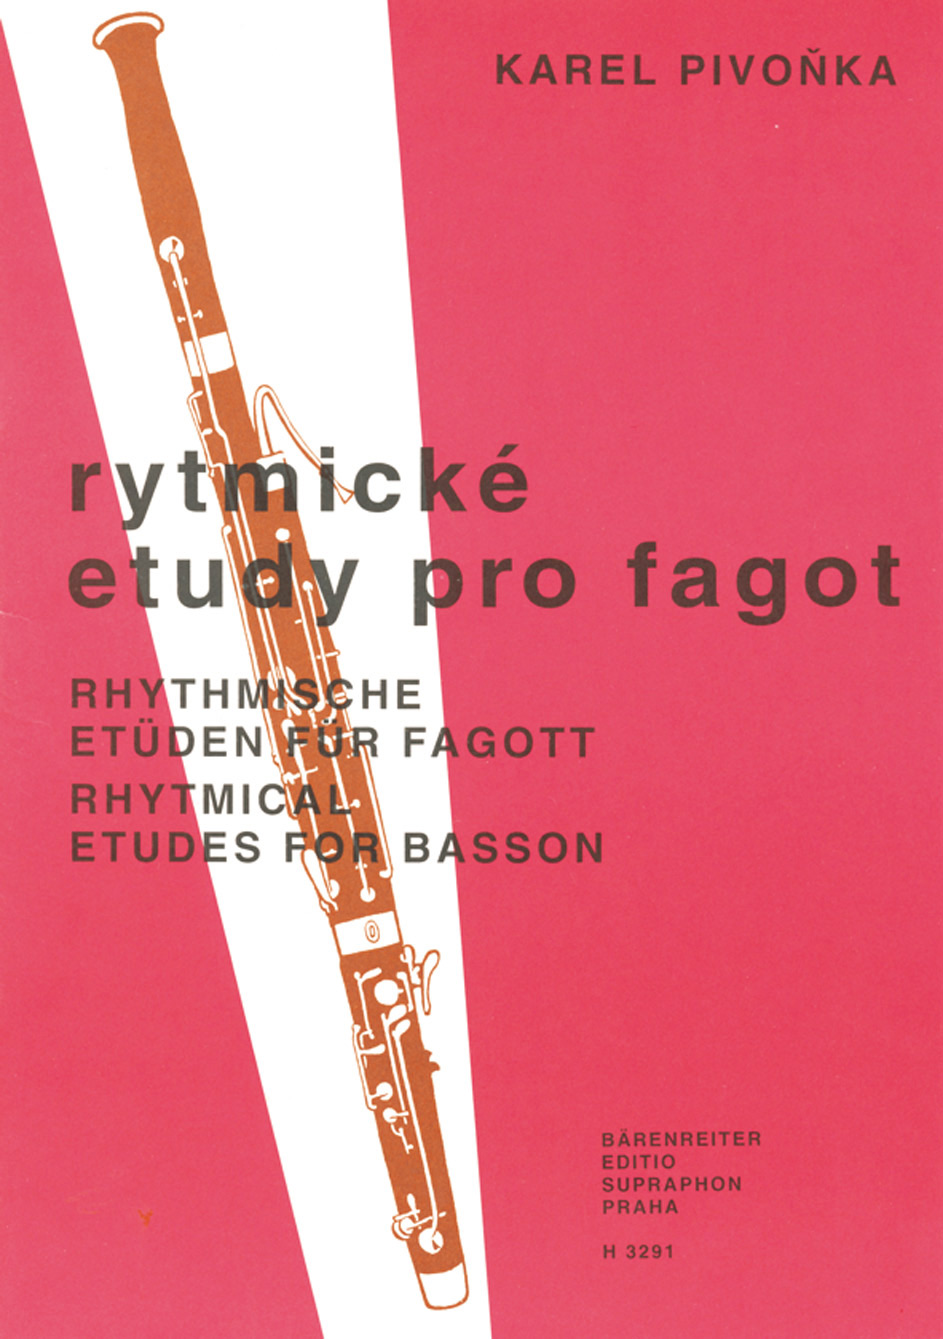 Karel Pivonka: Rhythmische Etueden fuer Fagott: Bassoon: Instrumental Work